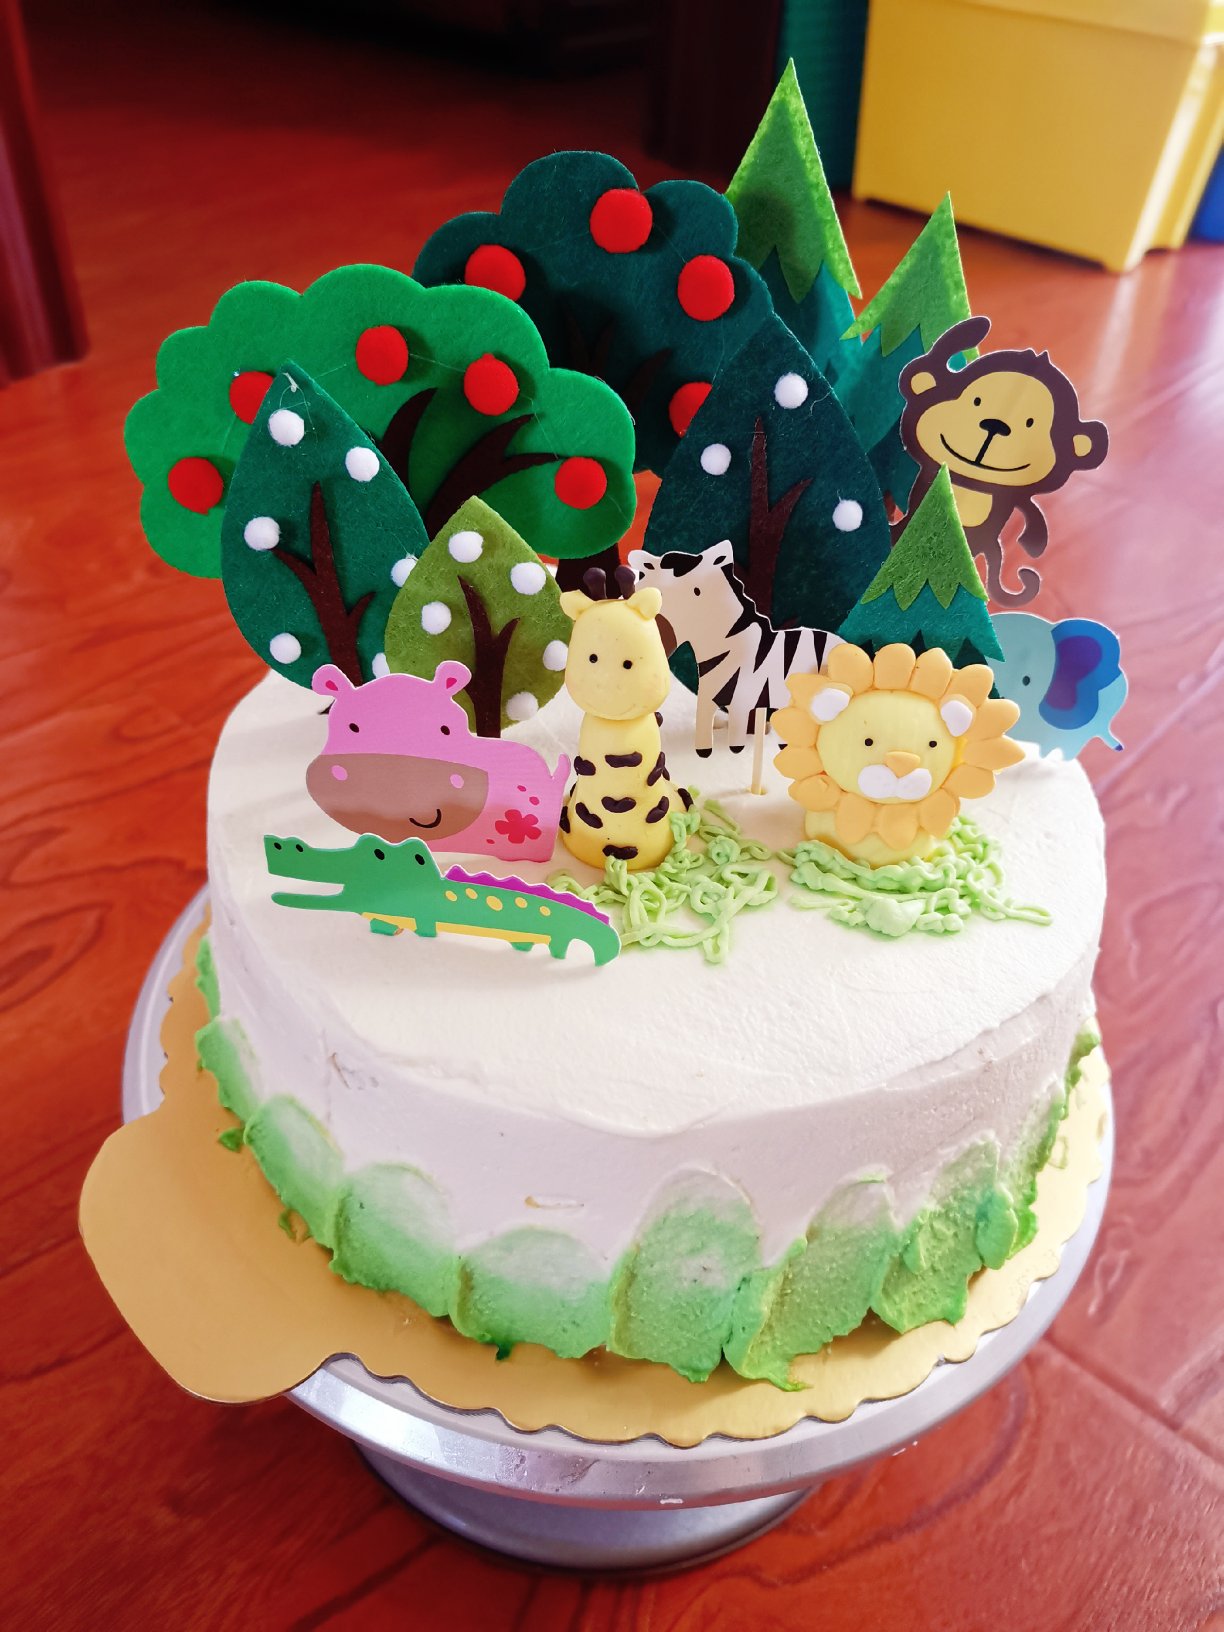 孩子生日蛋糕裱花可爱版8寸表情包